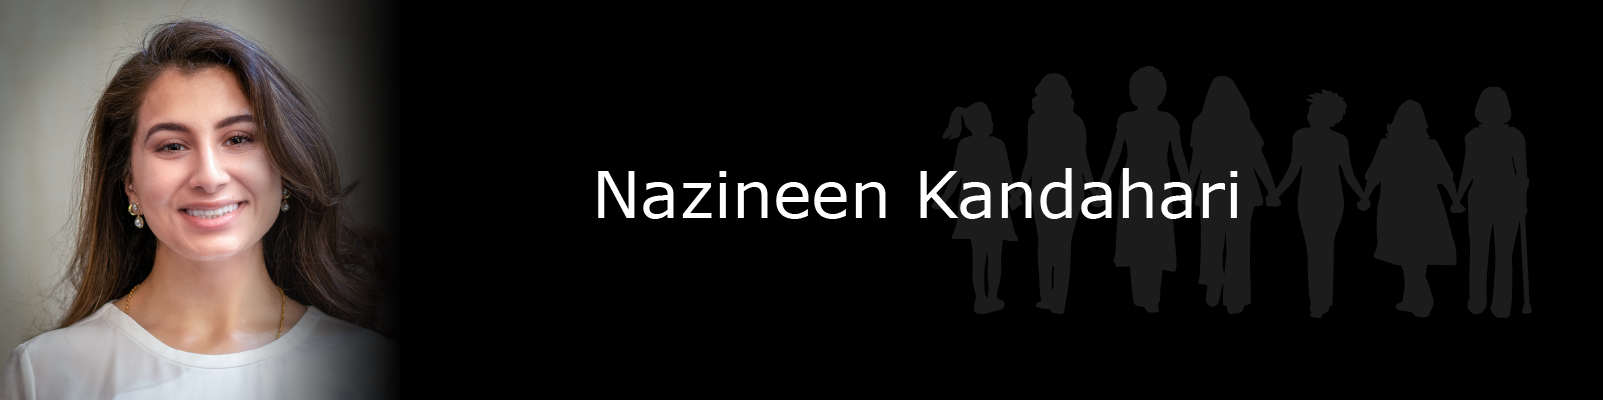 Photo of Nazineen Kandahari.